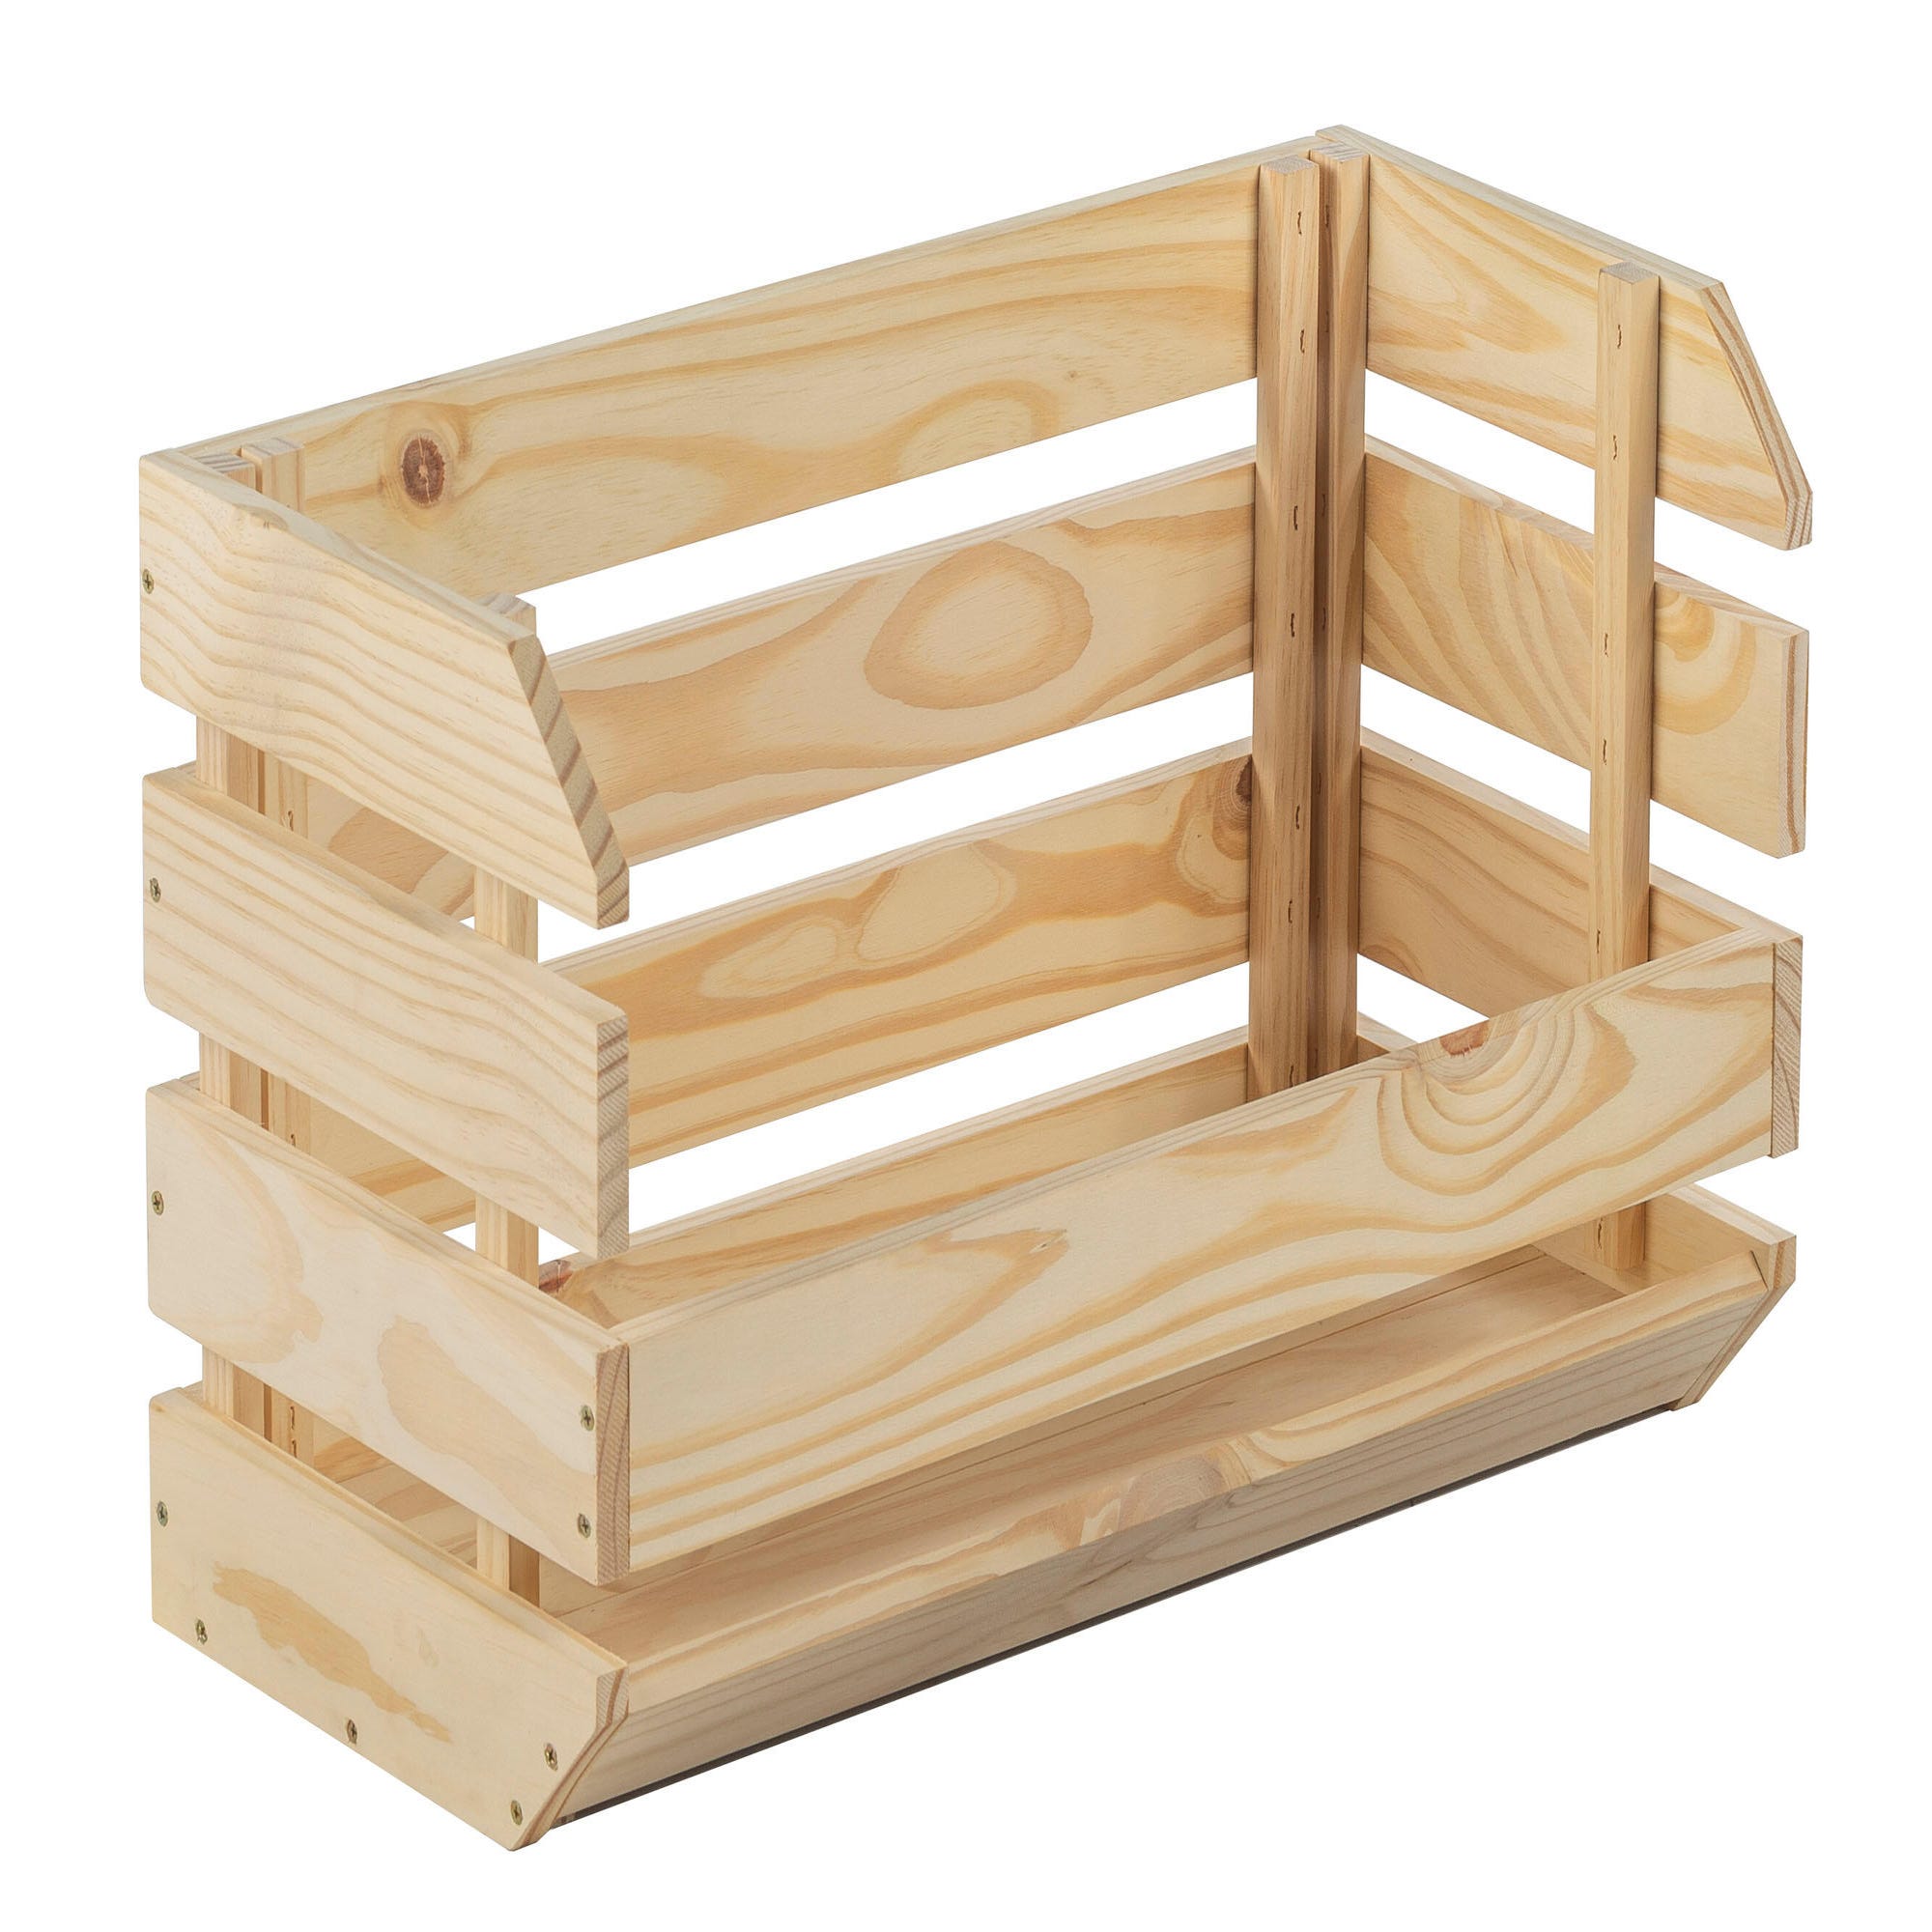  Cajas grandes de madera de pino : Productos de Oficina